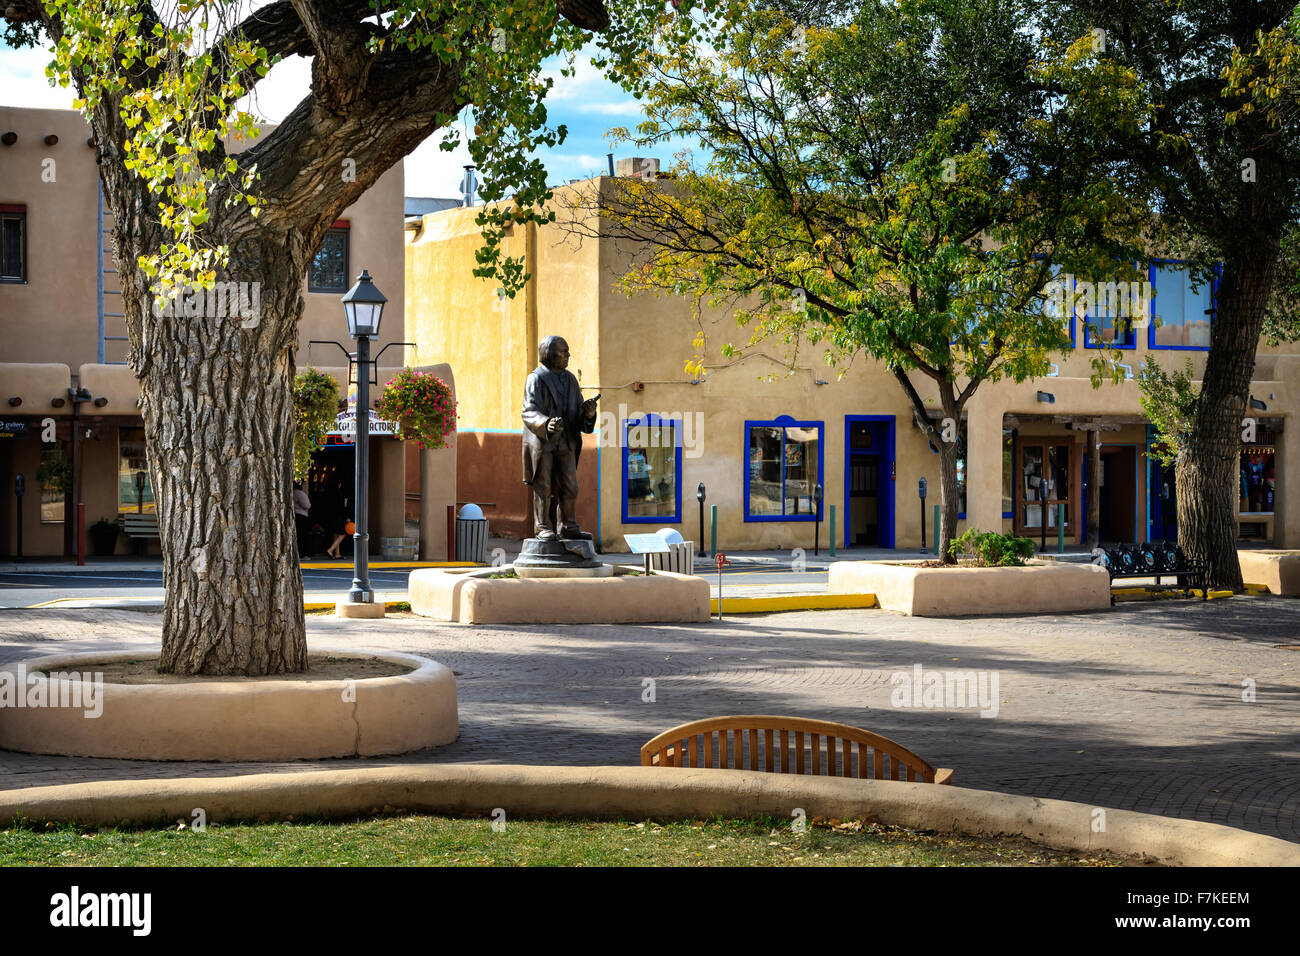 Una vista della piazza della città vecchia circondata da missione spagnola stile edifici adobe. La statua è di uno dei fondatori di UAT Foto Stock